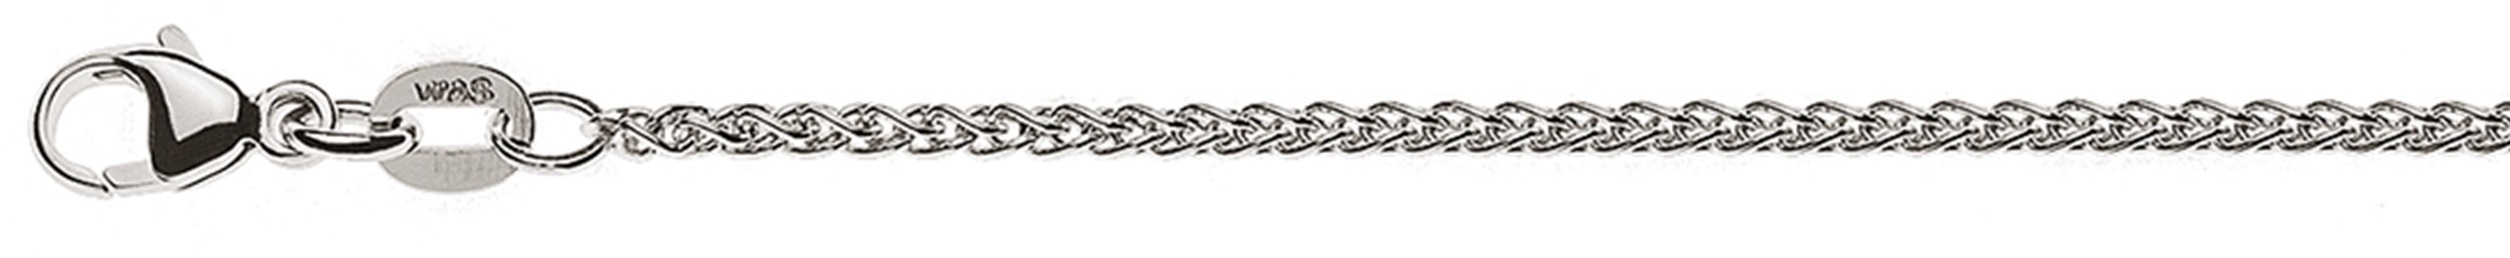 AURONOS Élégance Necklace white gold 14K cable chain 55cm 1.65mm